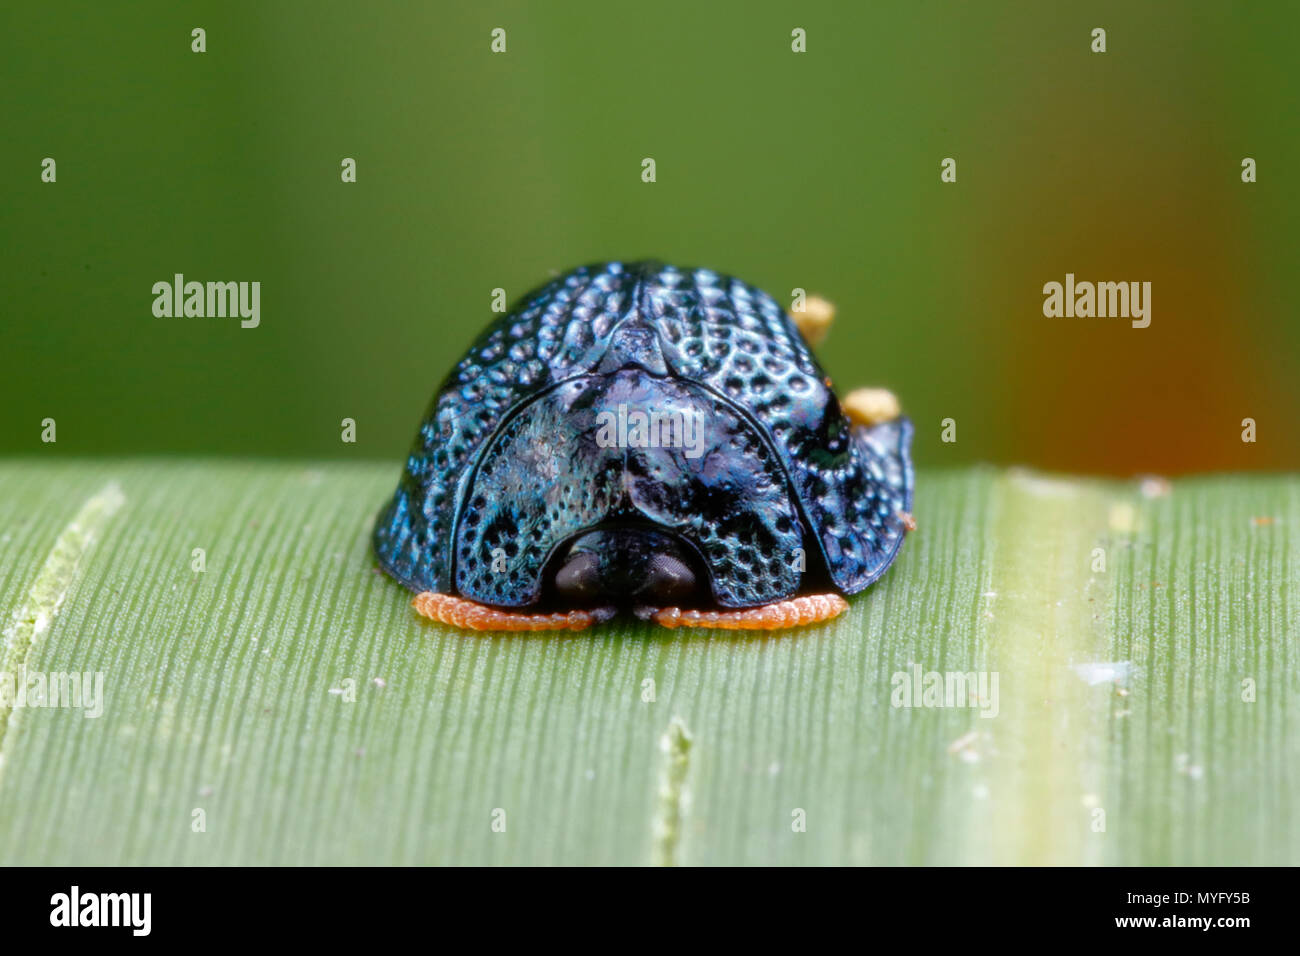 Un escarabajo tortuga palmetto, Hemisphaerota cyanea, descansando sobre una hoja de palmera. Foto de stock